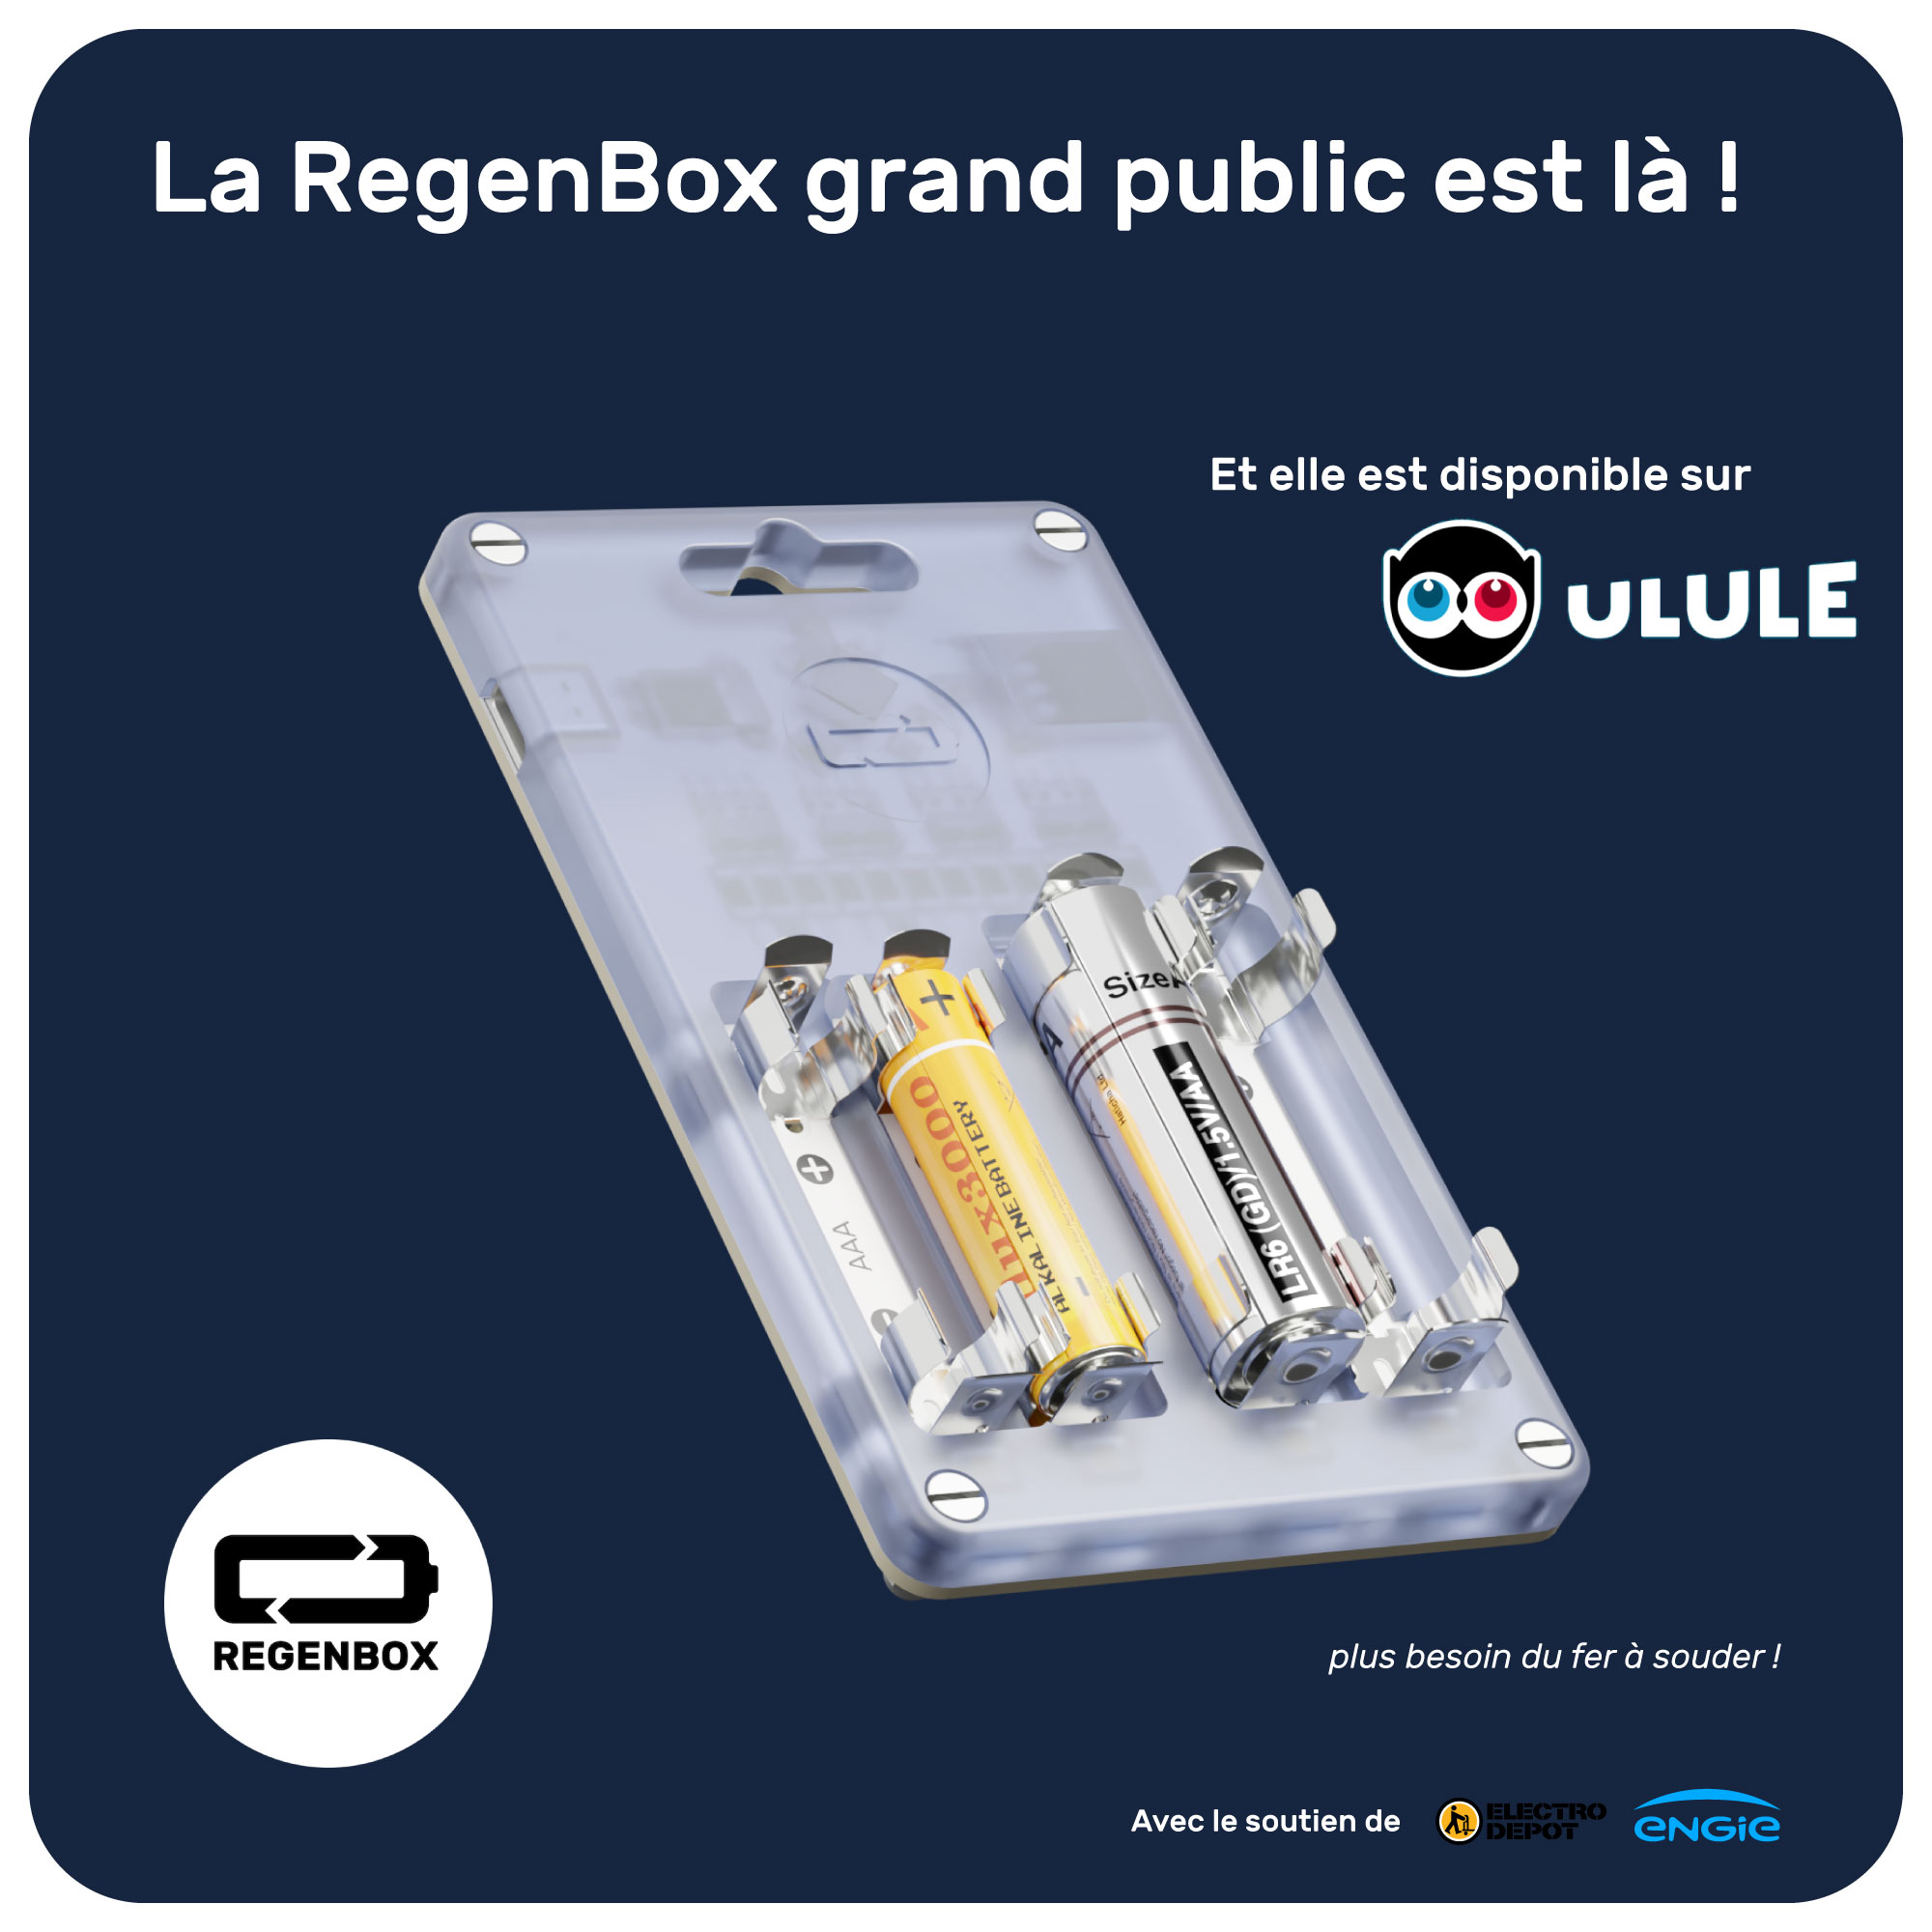 campagne de financement participatif sur la plateforme Ulule.objectif : développer la nouvelle RegenBox, un chargeur universel qui sera un régénérateur de piles alcalines ET chargeur de piles rechargeables.